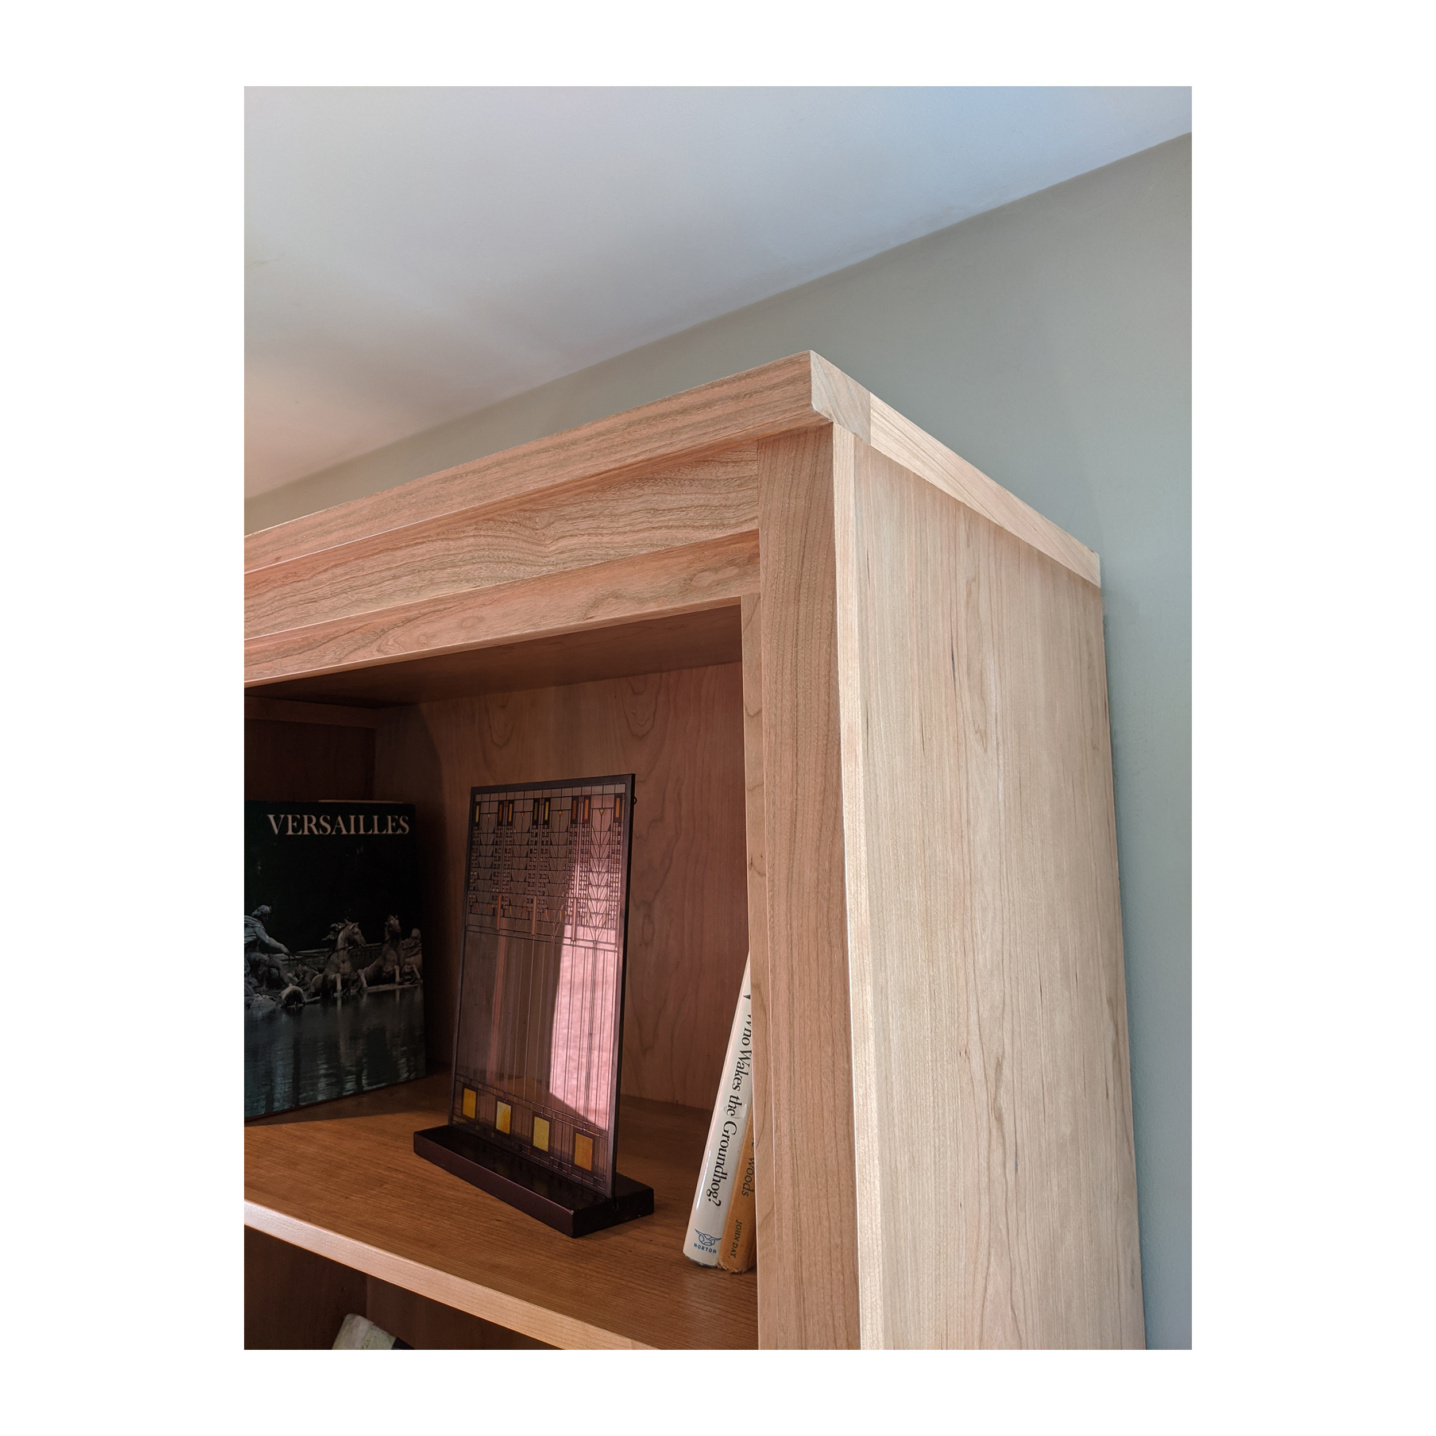 Custom made cherry wood bookshelf